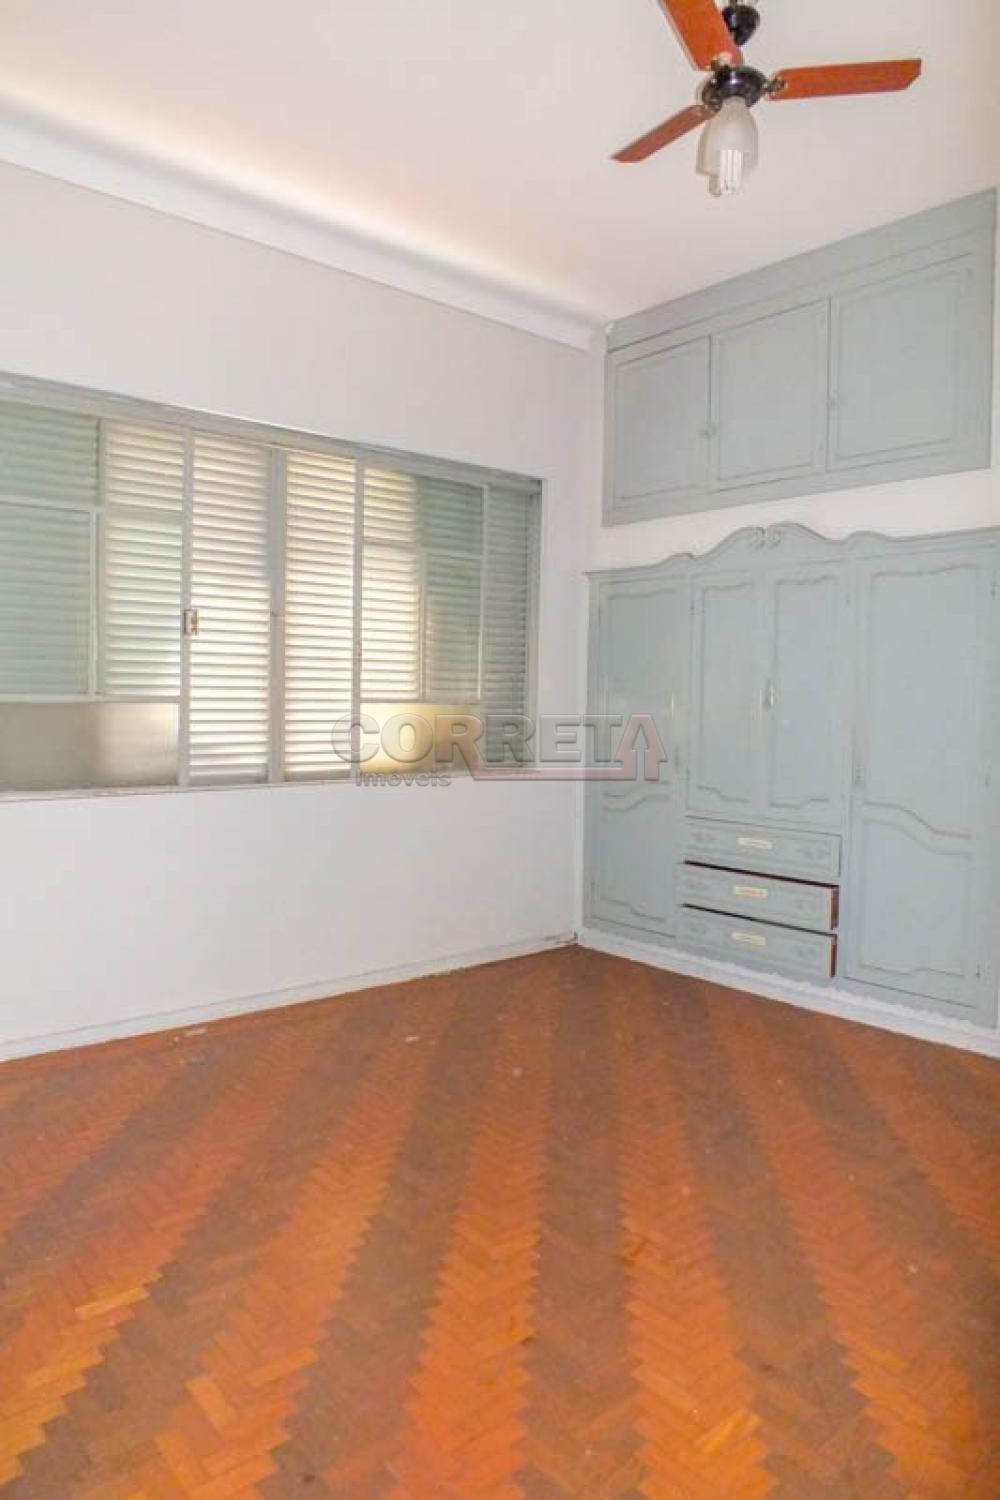 Alugar Casa / Residencial em Araçatuba R$ 2.500,00 - Foto 6